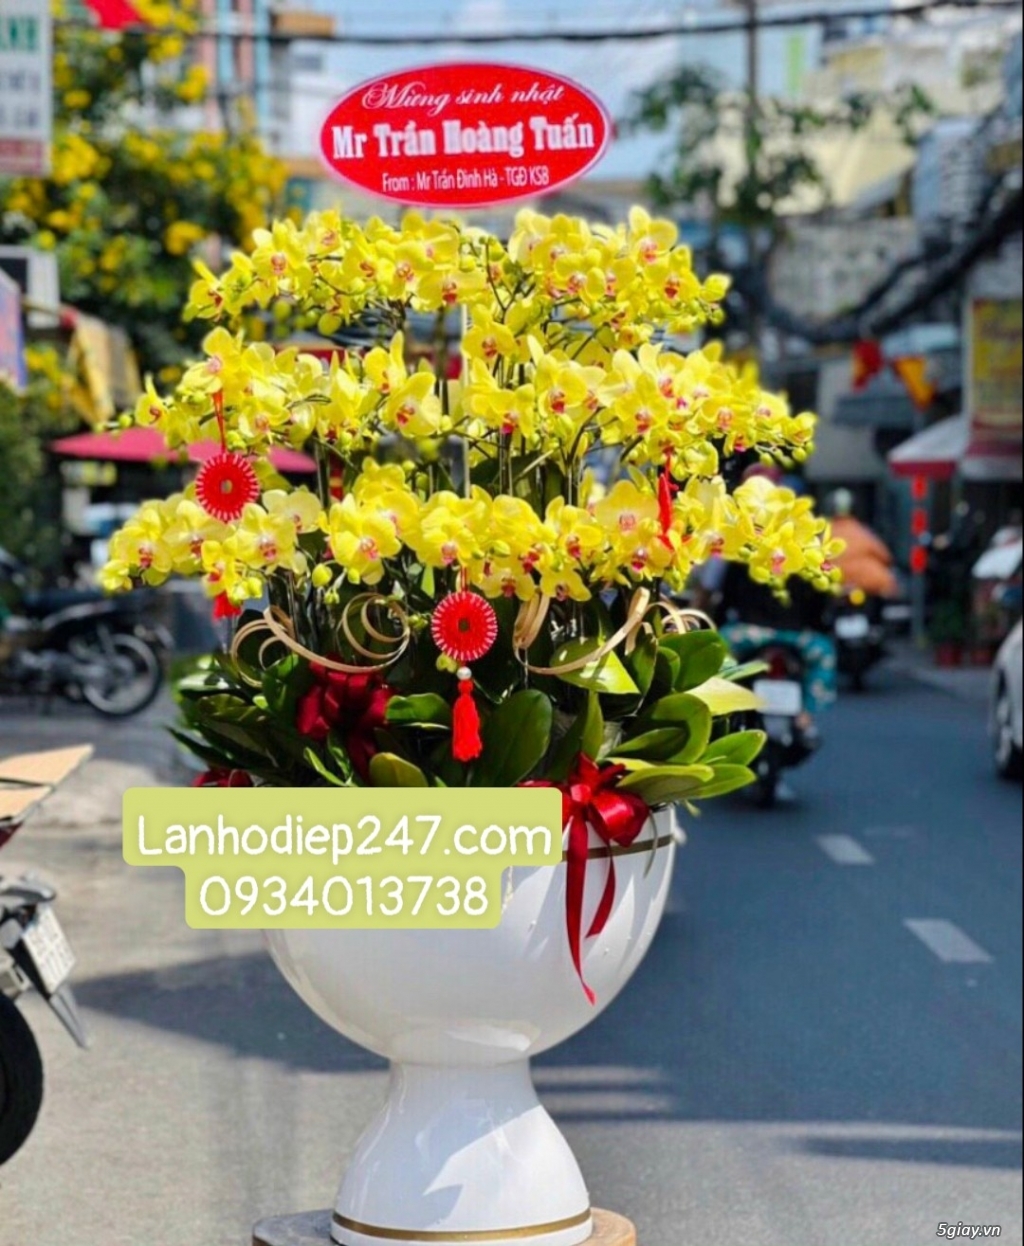 Shop hoa tươi Lan Hồ Điệp 247 tại Đức Hòa Long An 0934013738 - 14